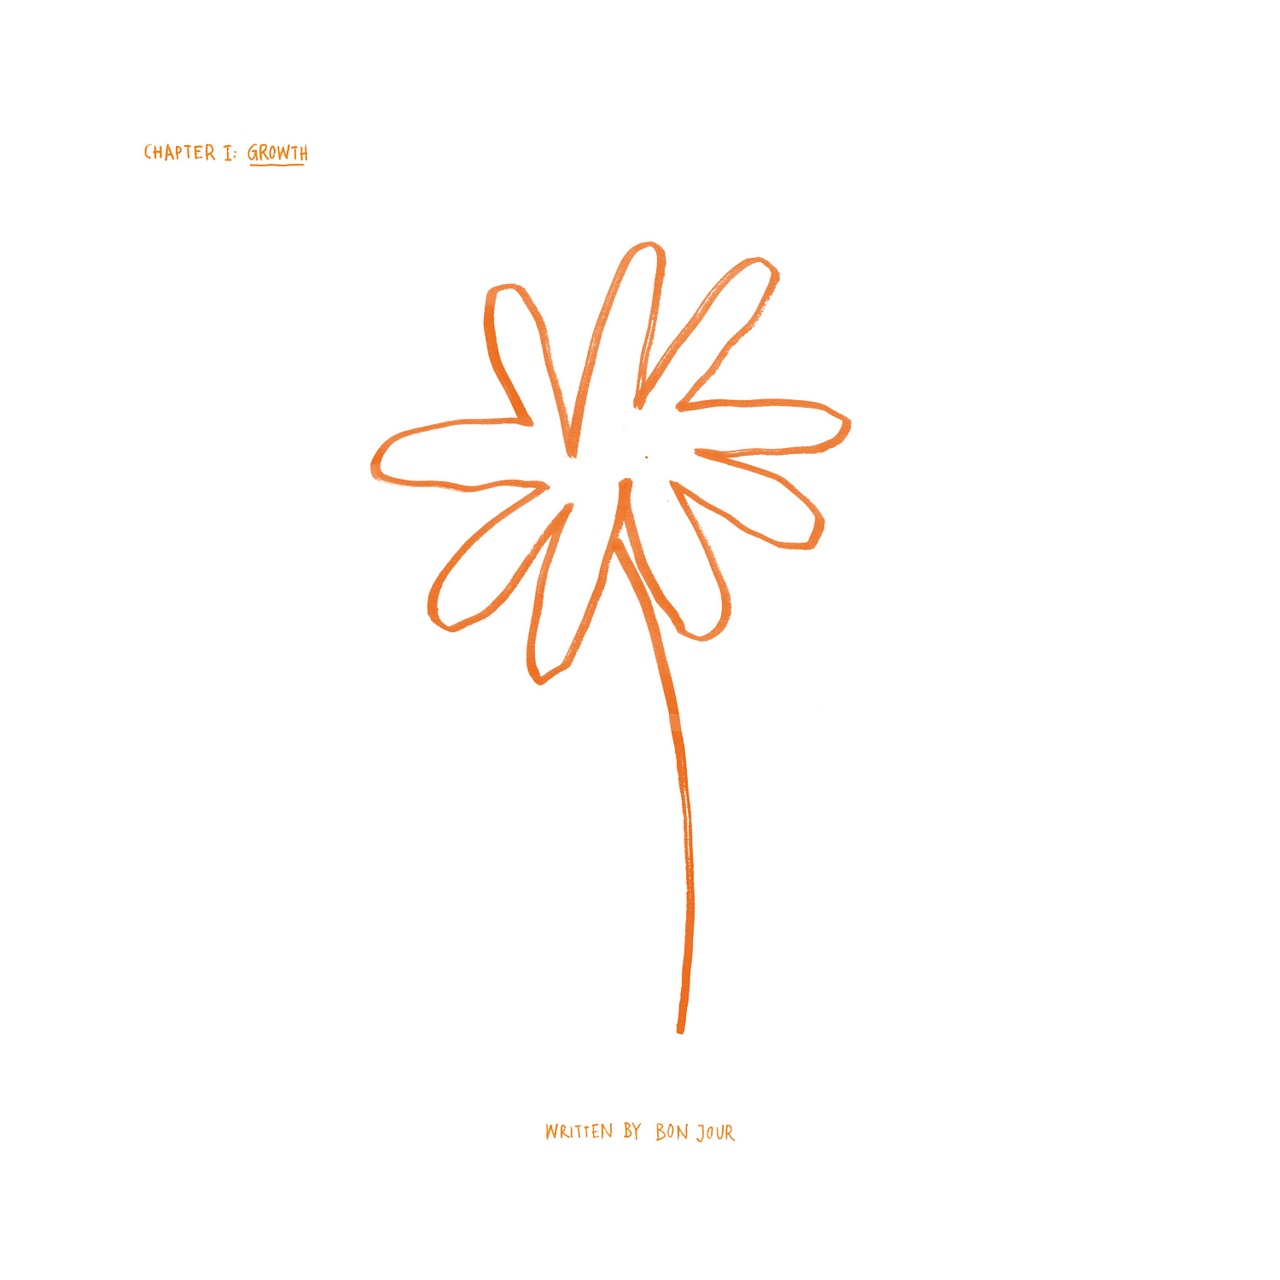 Albumcover von Bon Jour "Chapter 1: Growth"